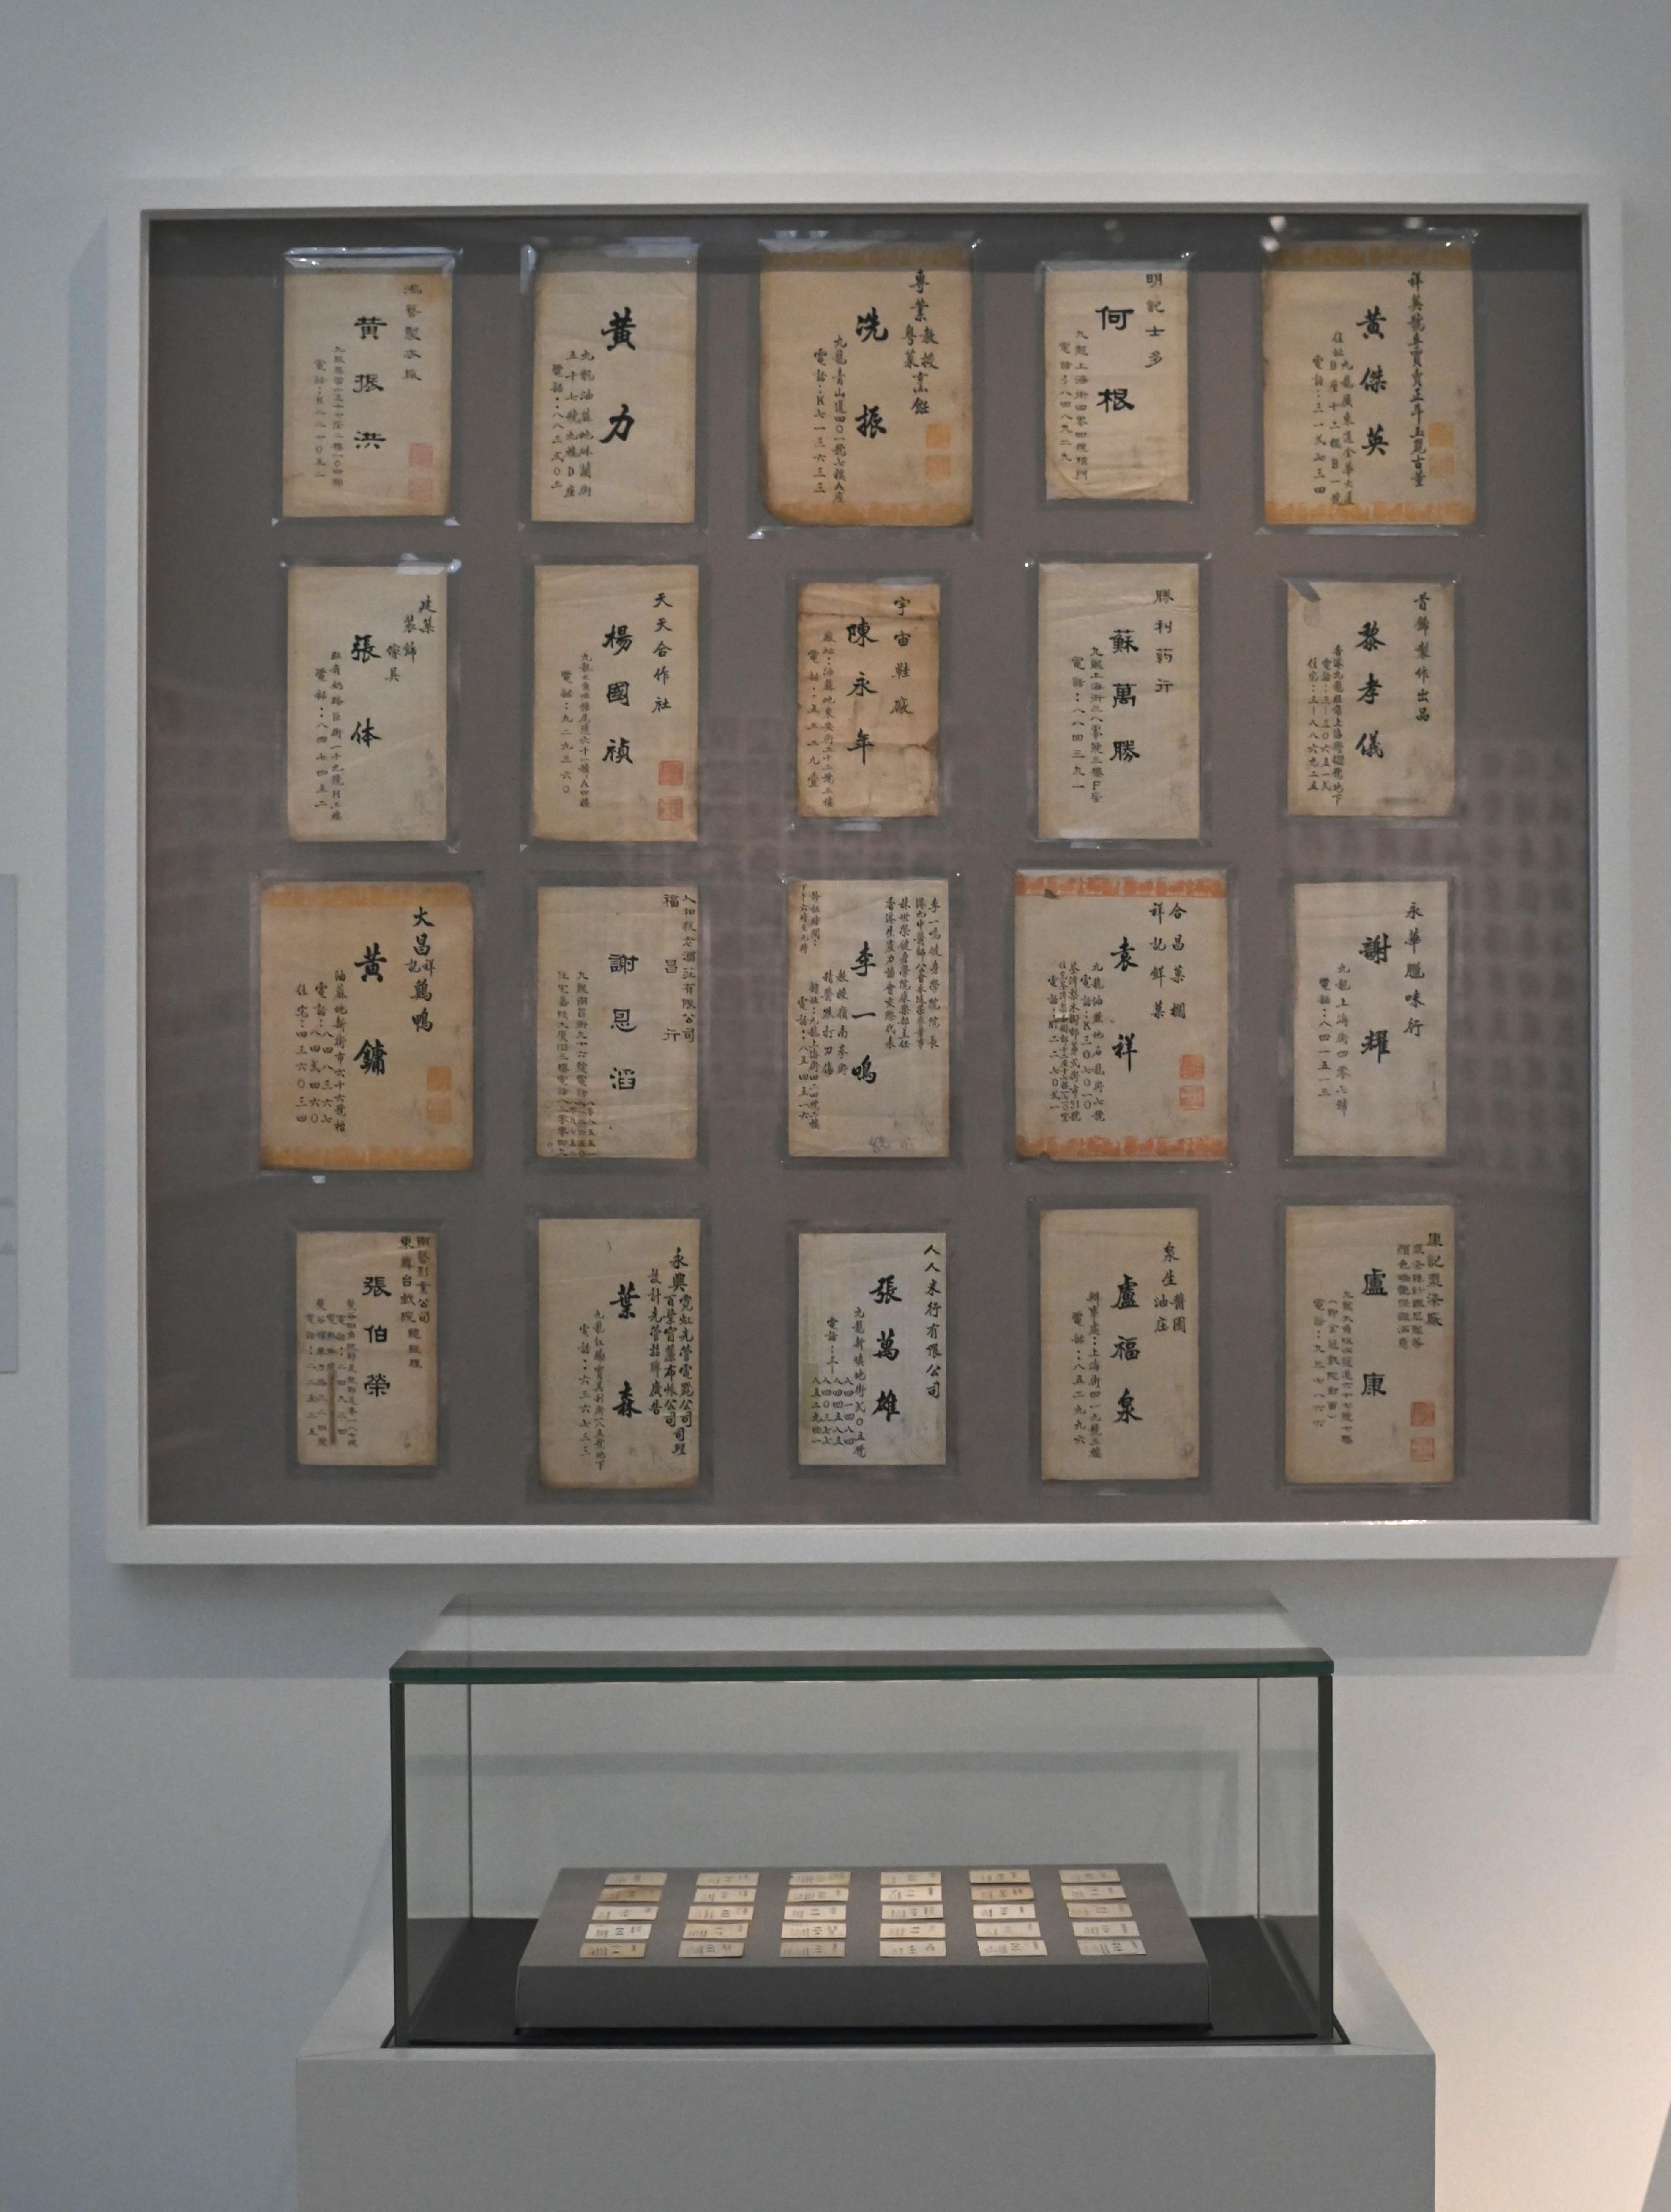 「字由人──漢字創意集」展覽明日（九月九日）起在香港藝術館舉行。圖示一九五○至七○年代電腦印刷技術尚未普及時，由卓少衡和黎一鳴人手設計和書寫的卡片手稿。